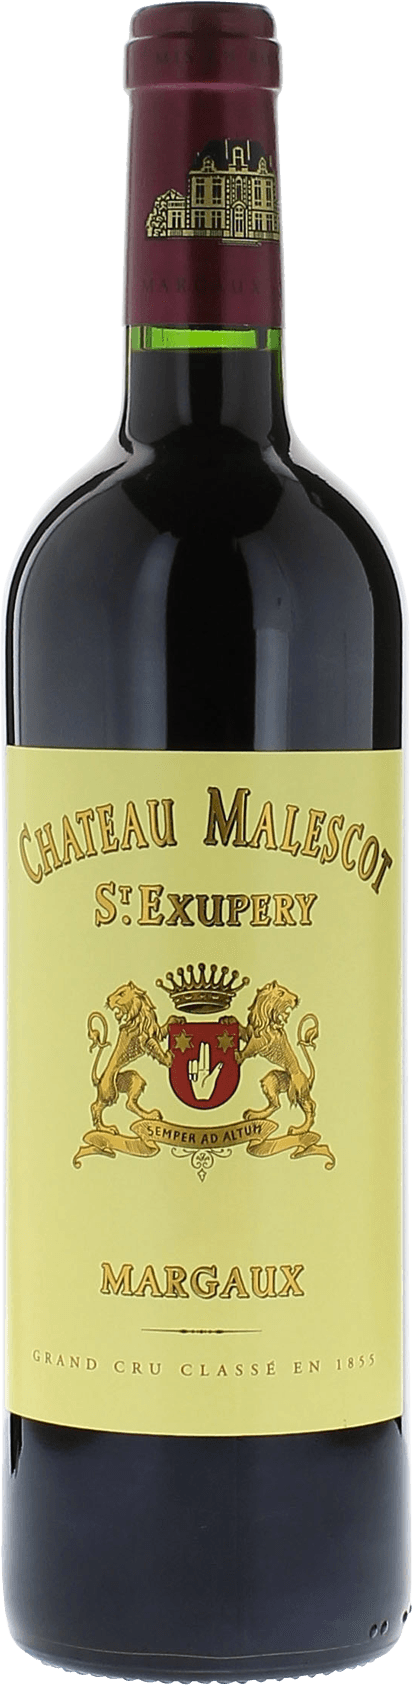 Malescot saint exupery 2017 3me Grand cru class Margaux, Bordeaux rouge